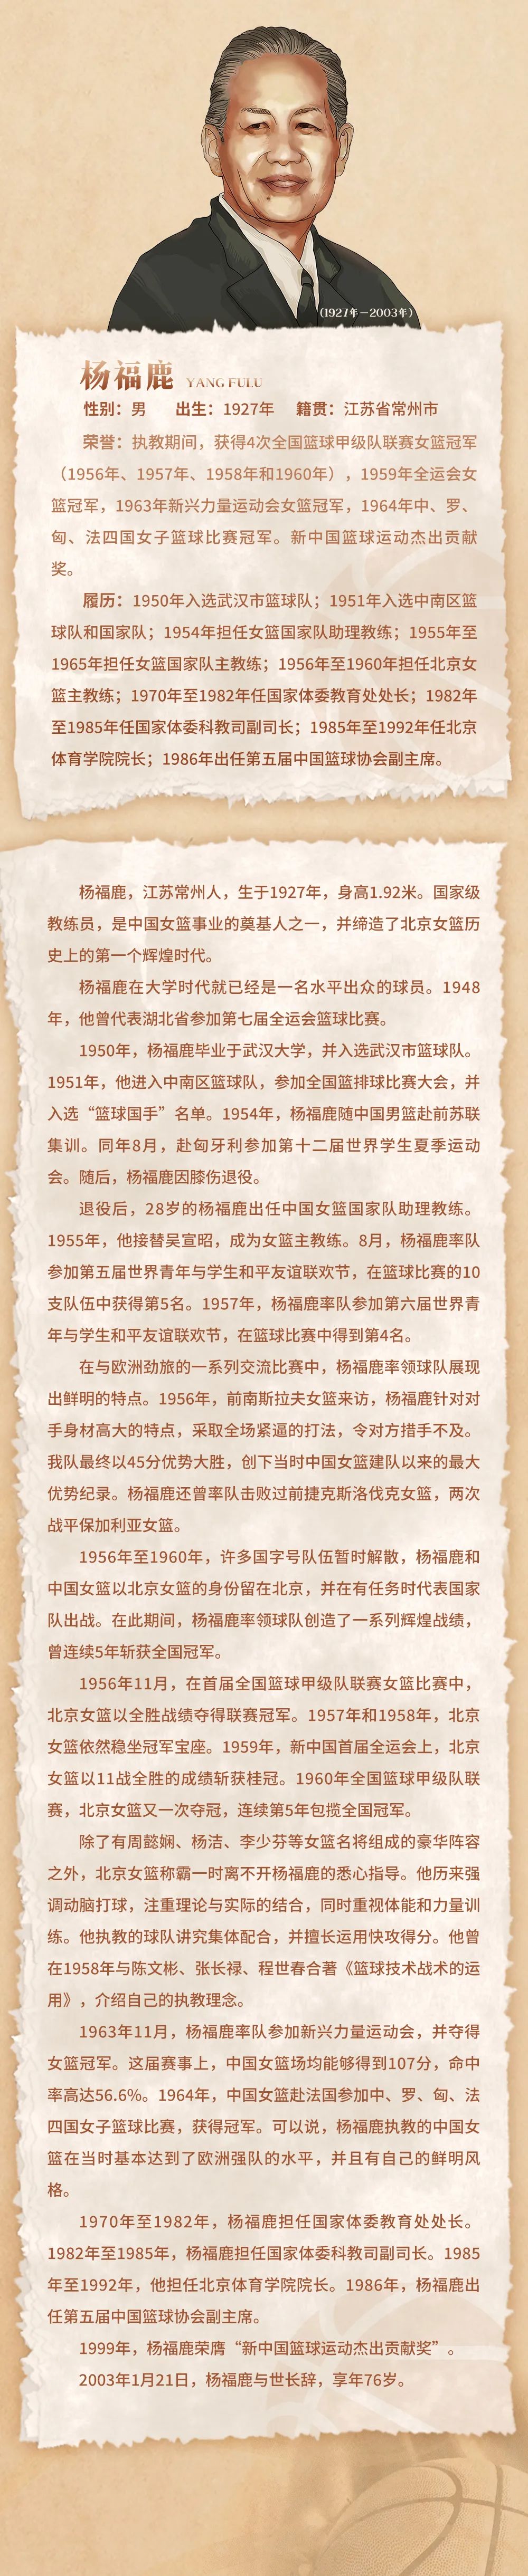 中国名人堂 | 特别致敬人物之杨福鹿：中国女篮事业奠基人